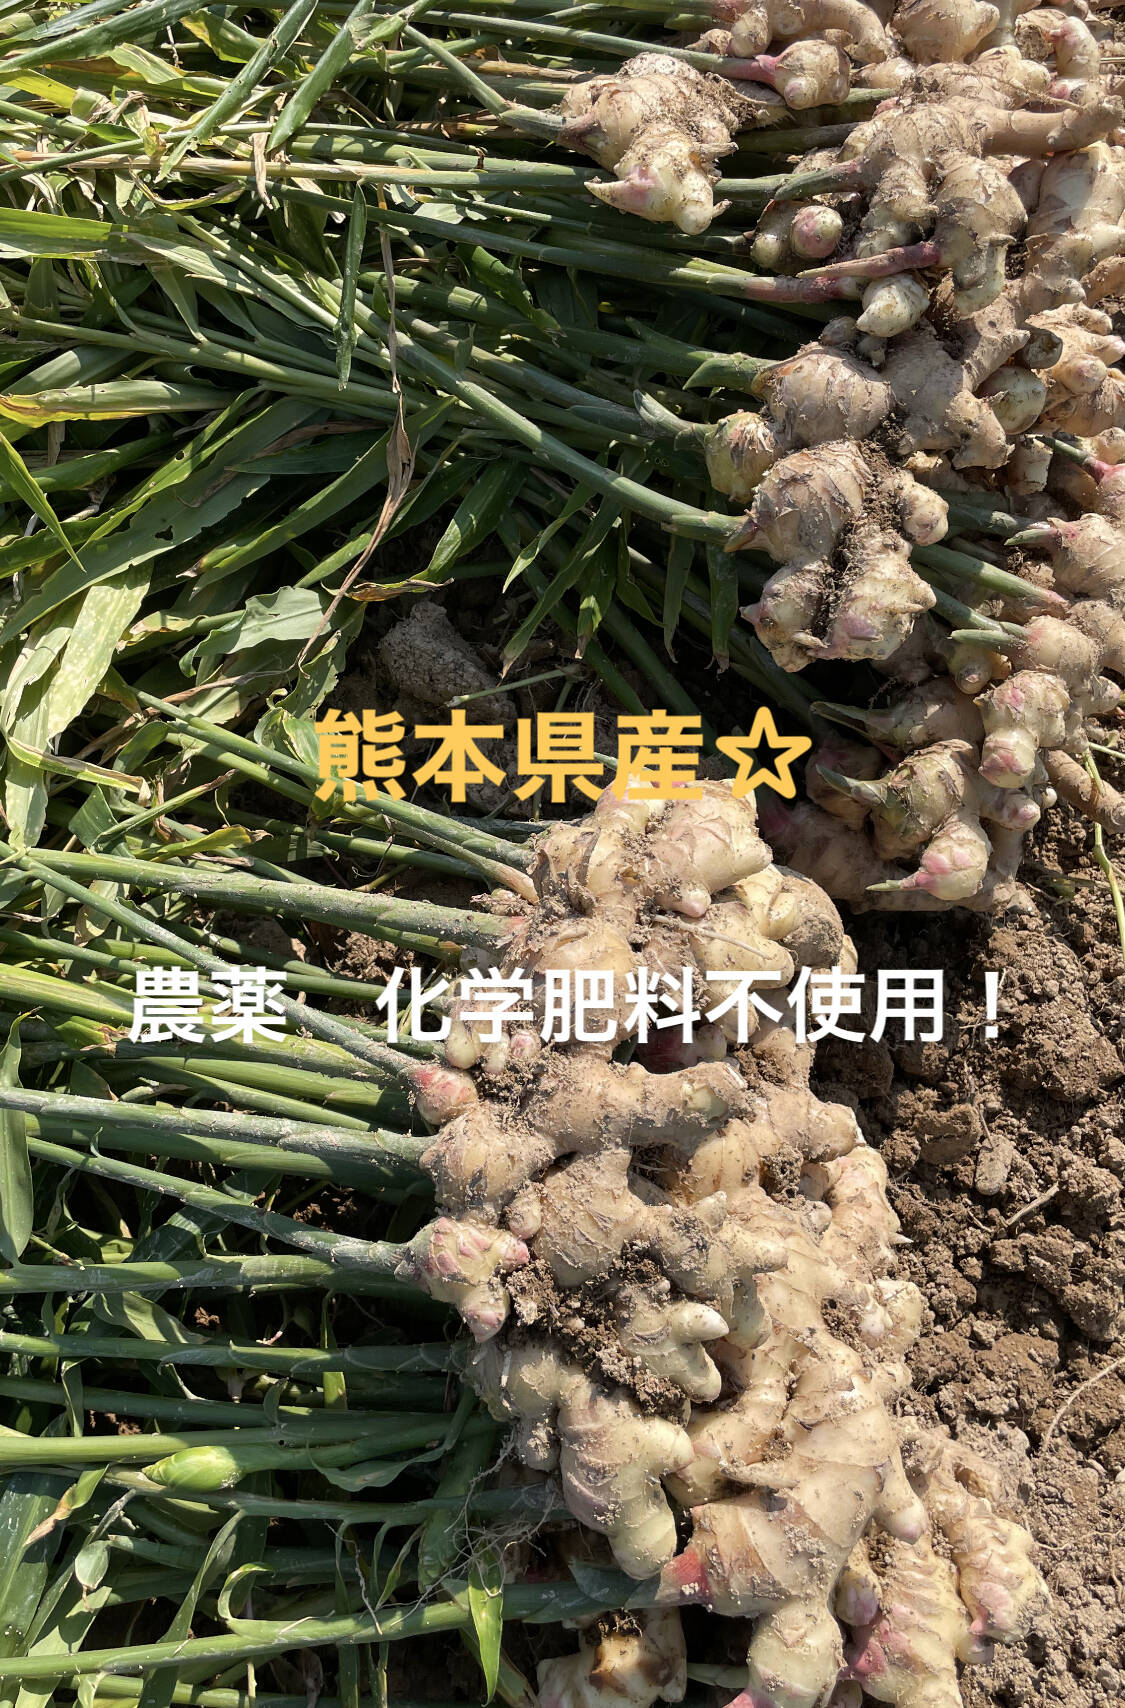 囲い生姜 無肥料 農薬栽培期間中不使用 露地栽培 熊本県産 4kg